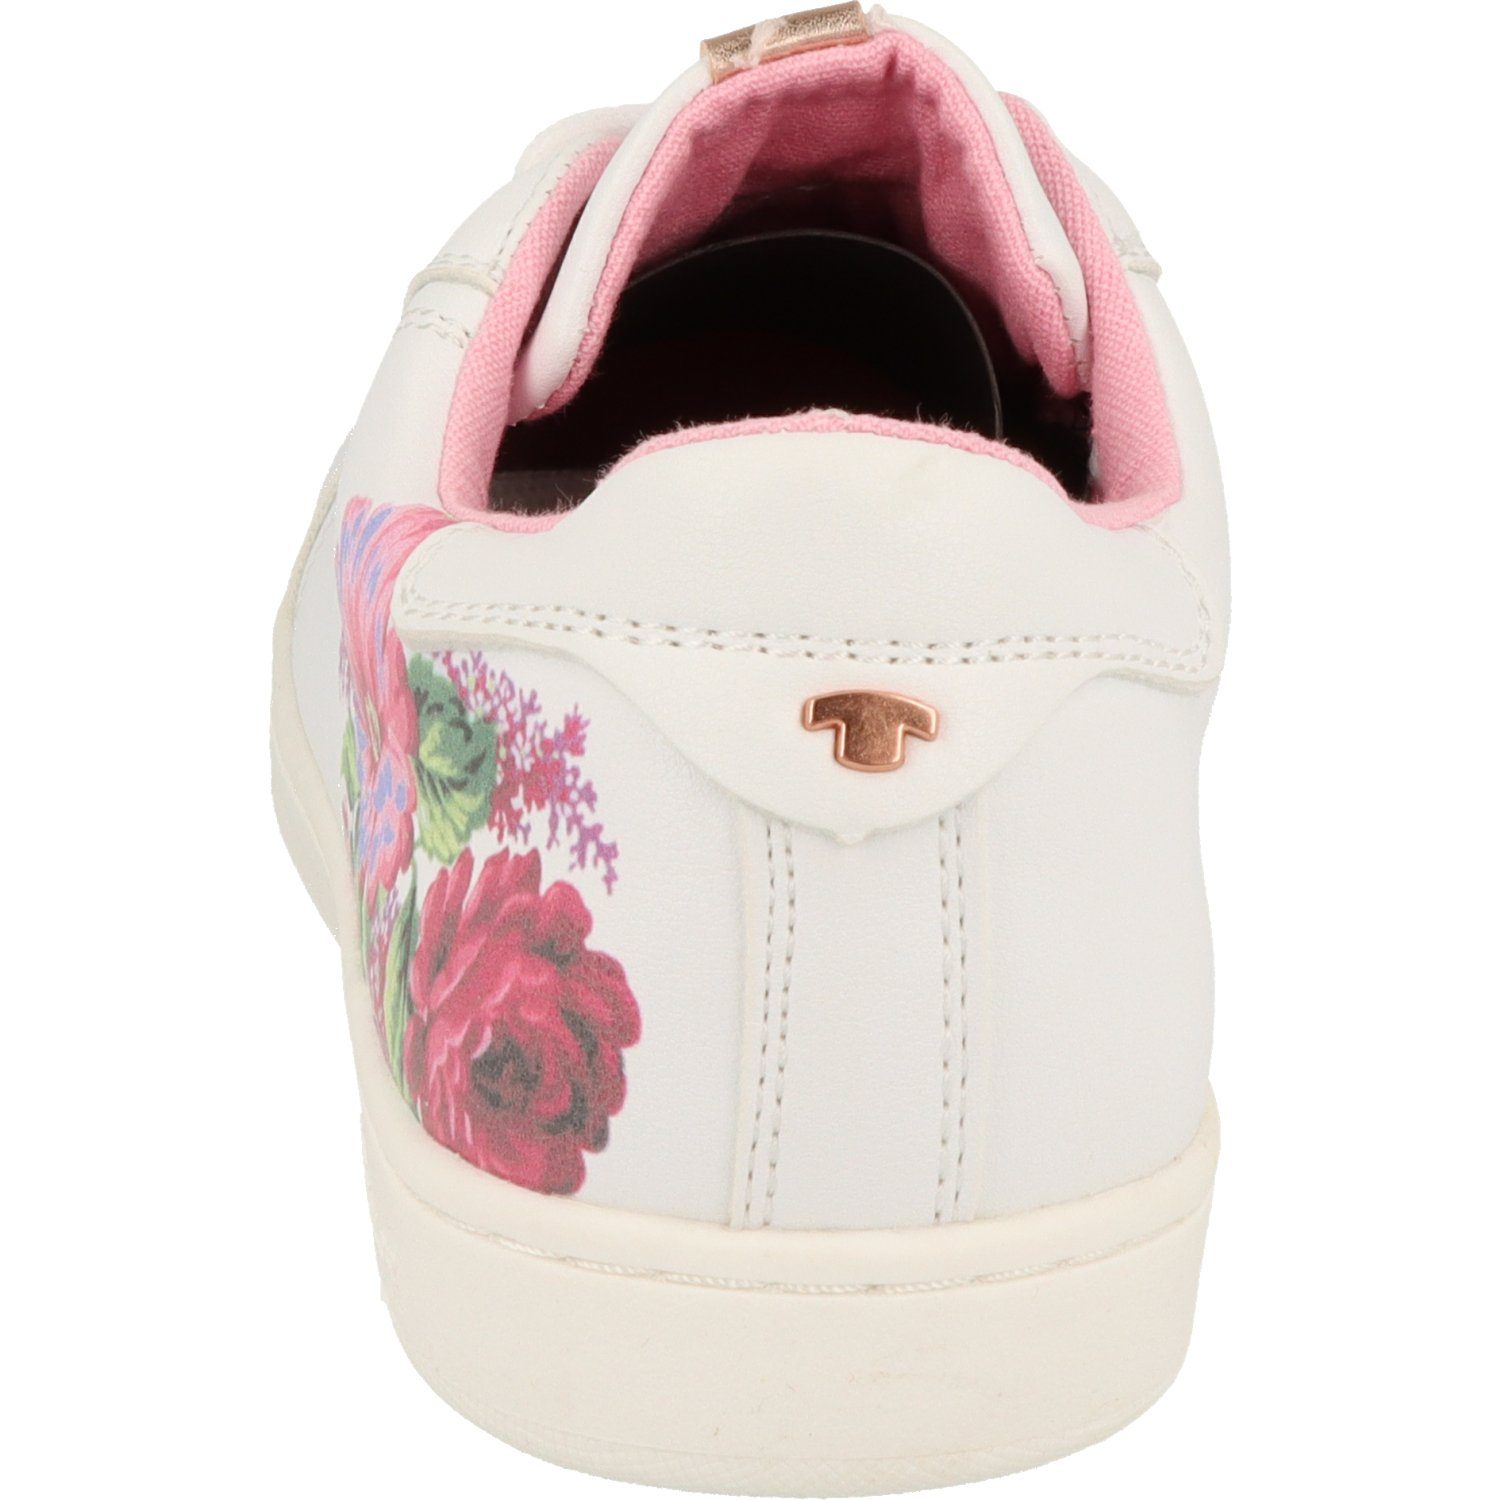 Schuhe Mädchen Flower Schnürschuh Halbschuhe White TAILOR TOM Sneaker 5372704